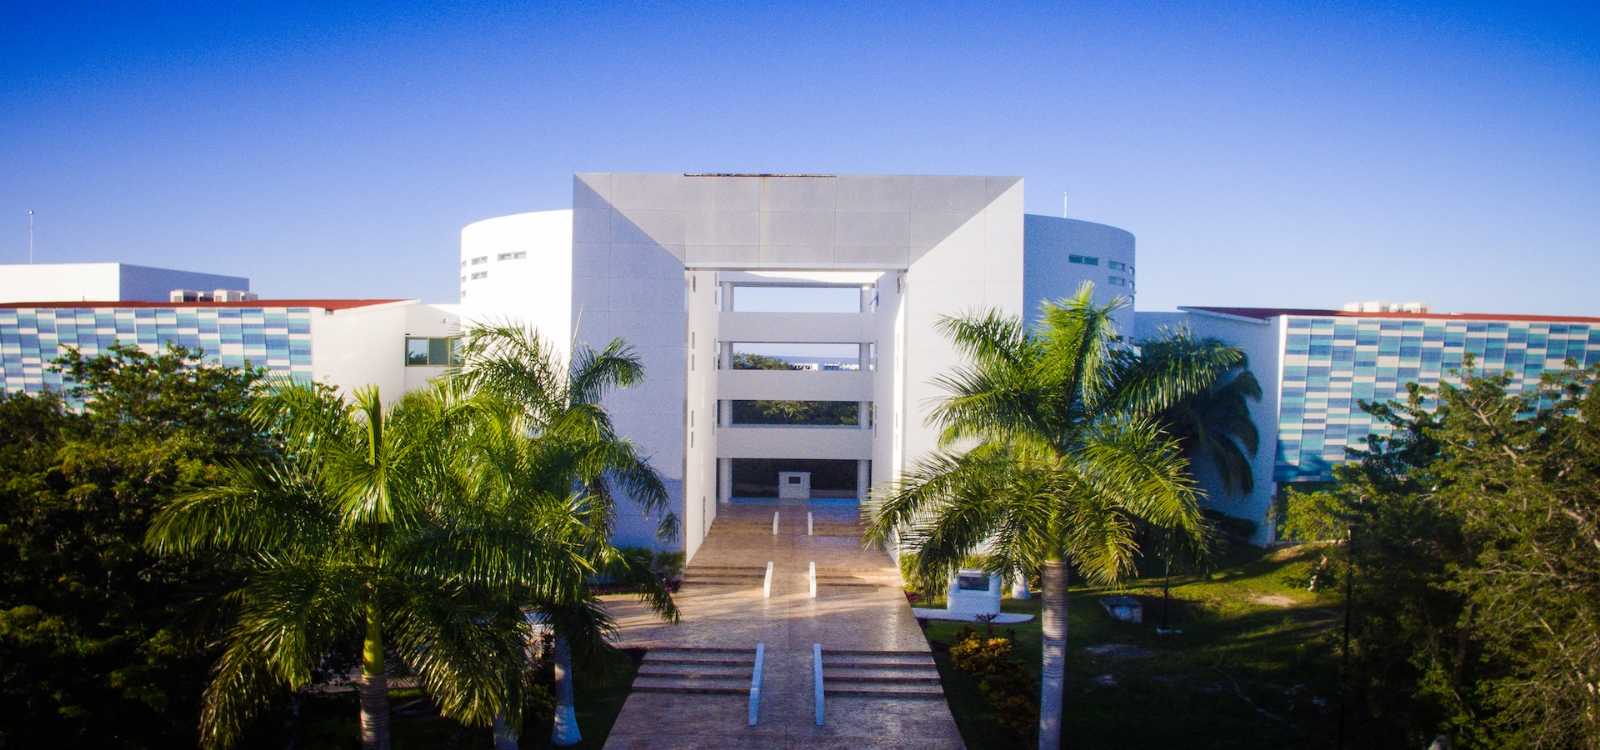 La Universidad de Quintana Roo, máxima casa de estudios de la entidad, se fundó el 31 de mayo de 1991